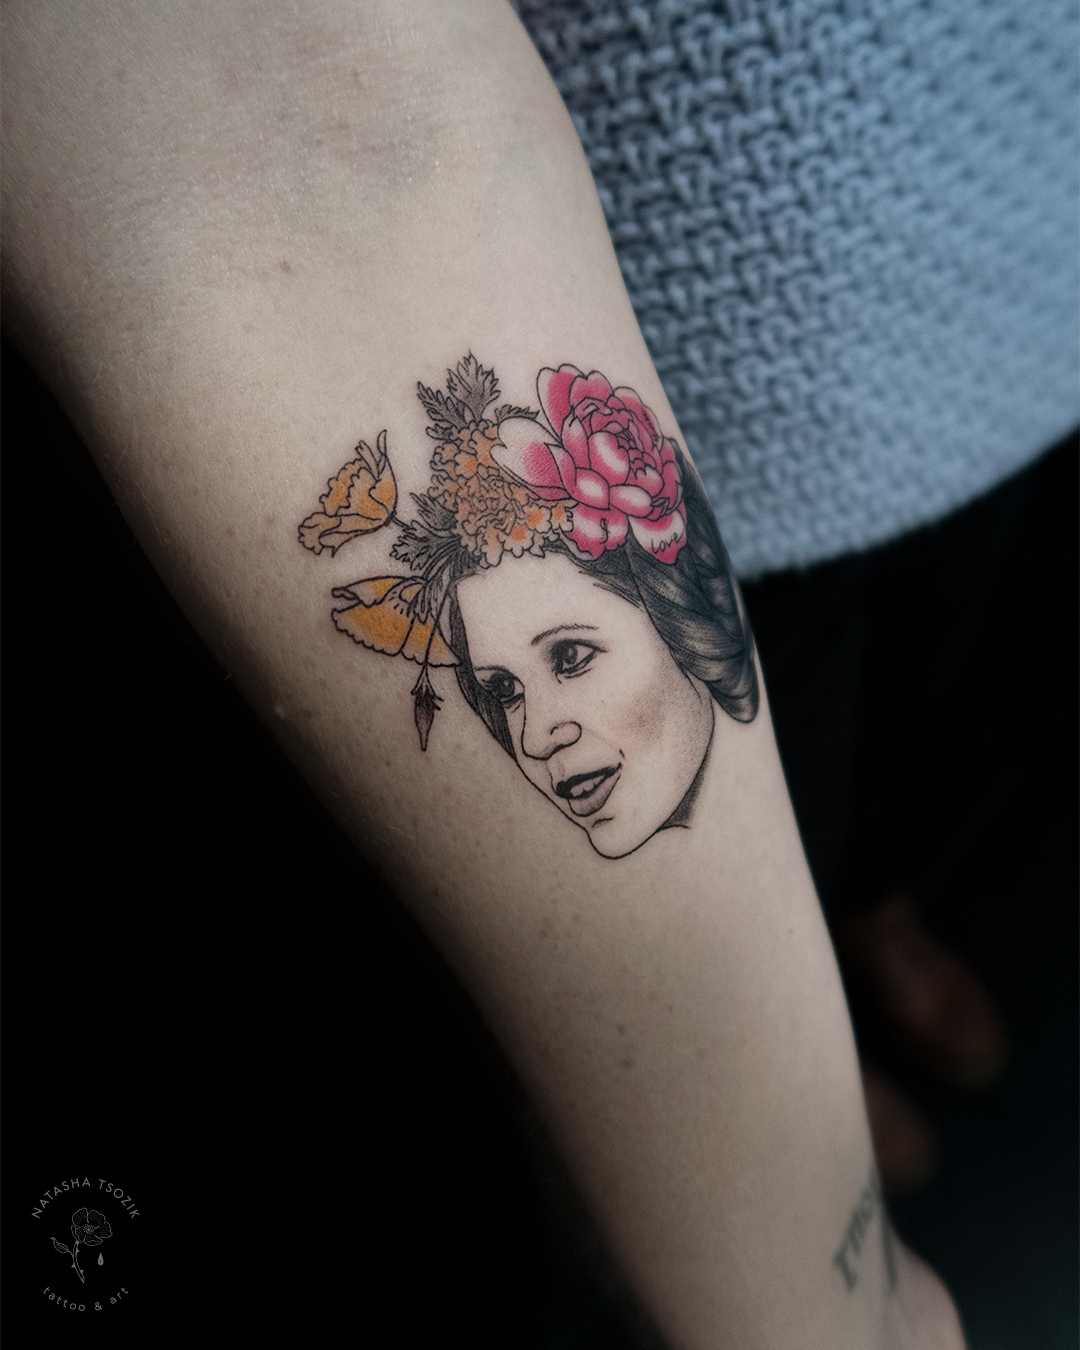 Fine line tattoo on a forearm – a portrait of Princess Leia with flowers by Natasha Tsozik